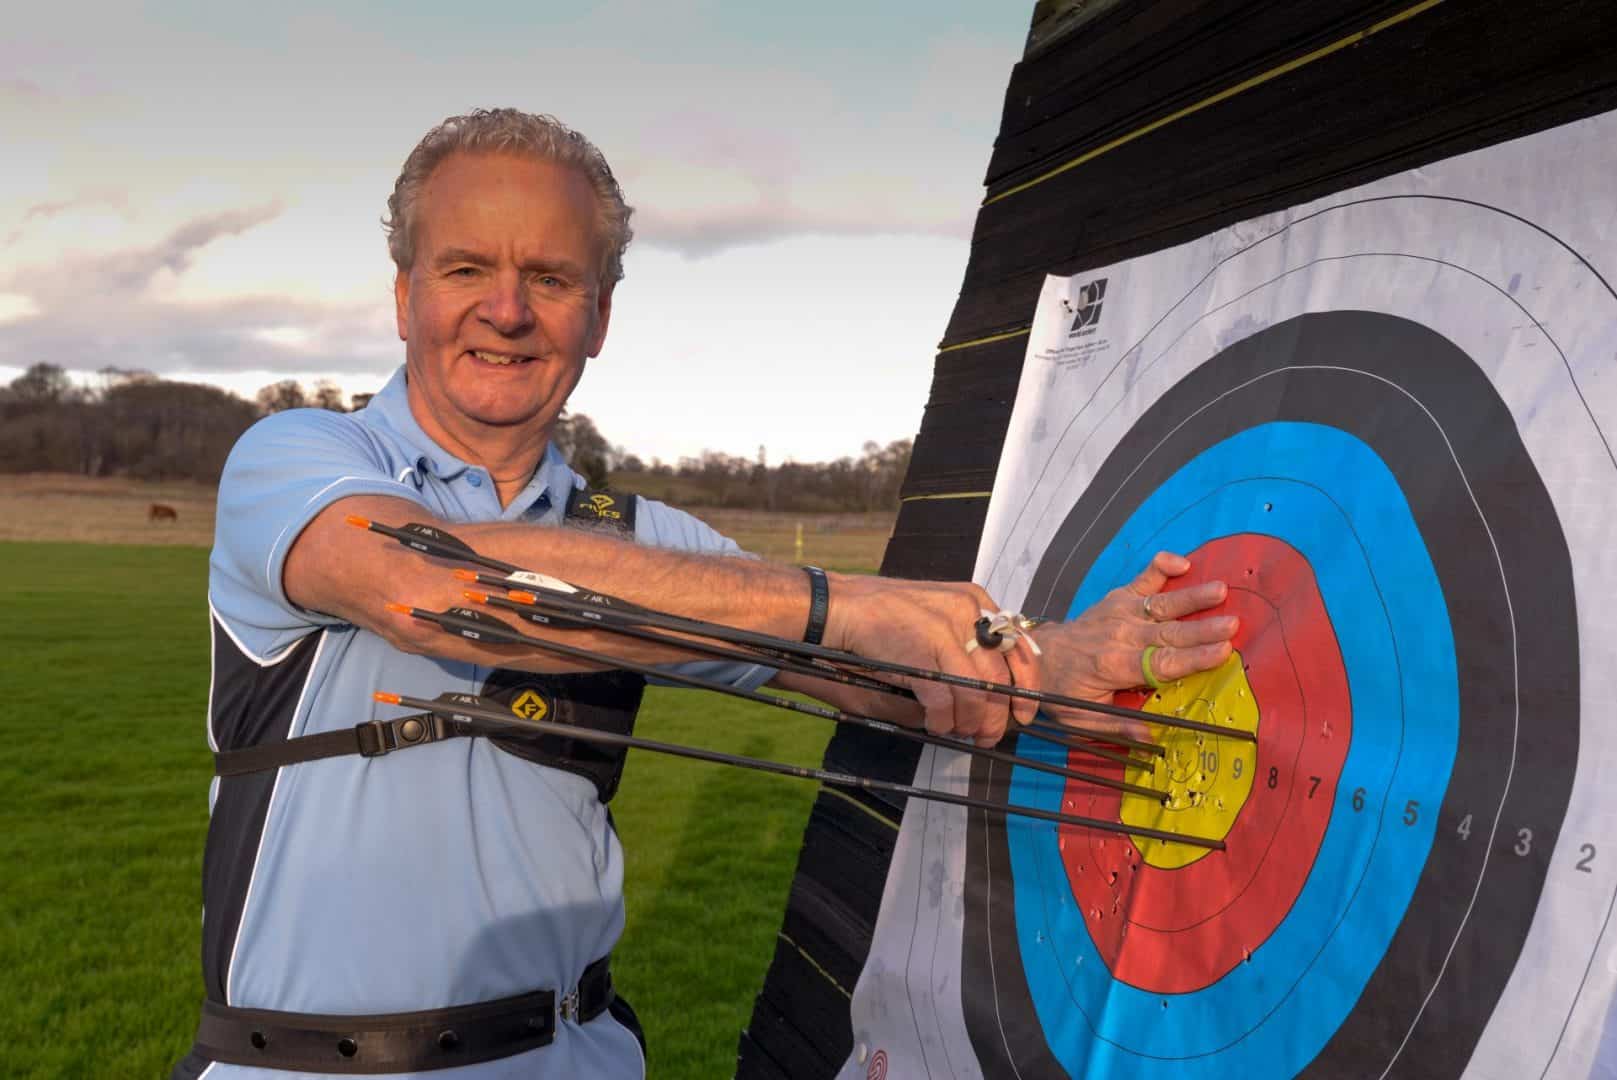 Volunteers' Week: We salute our archery volunteers